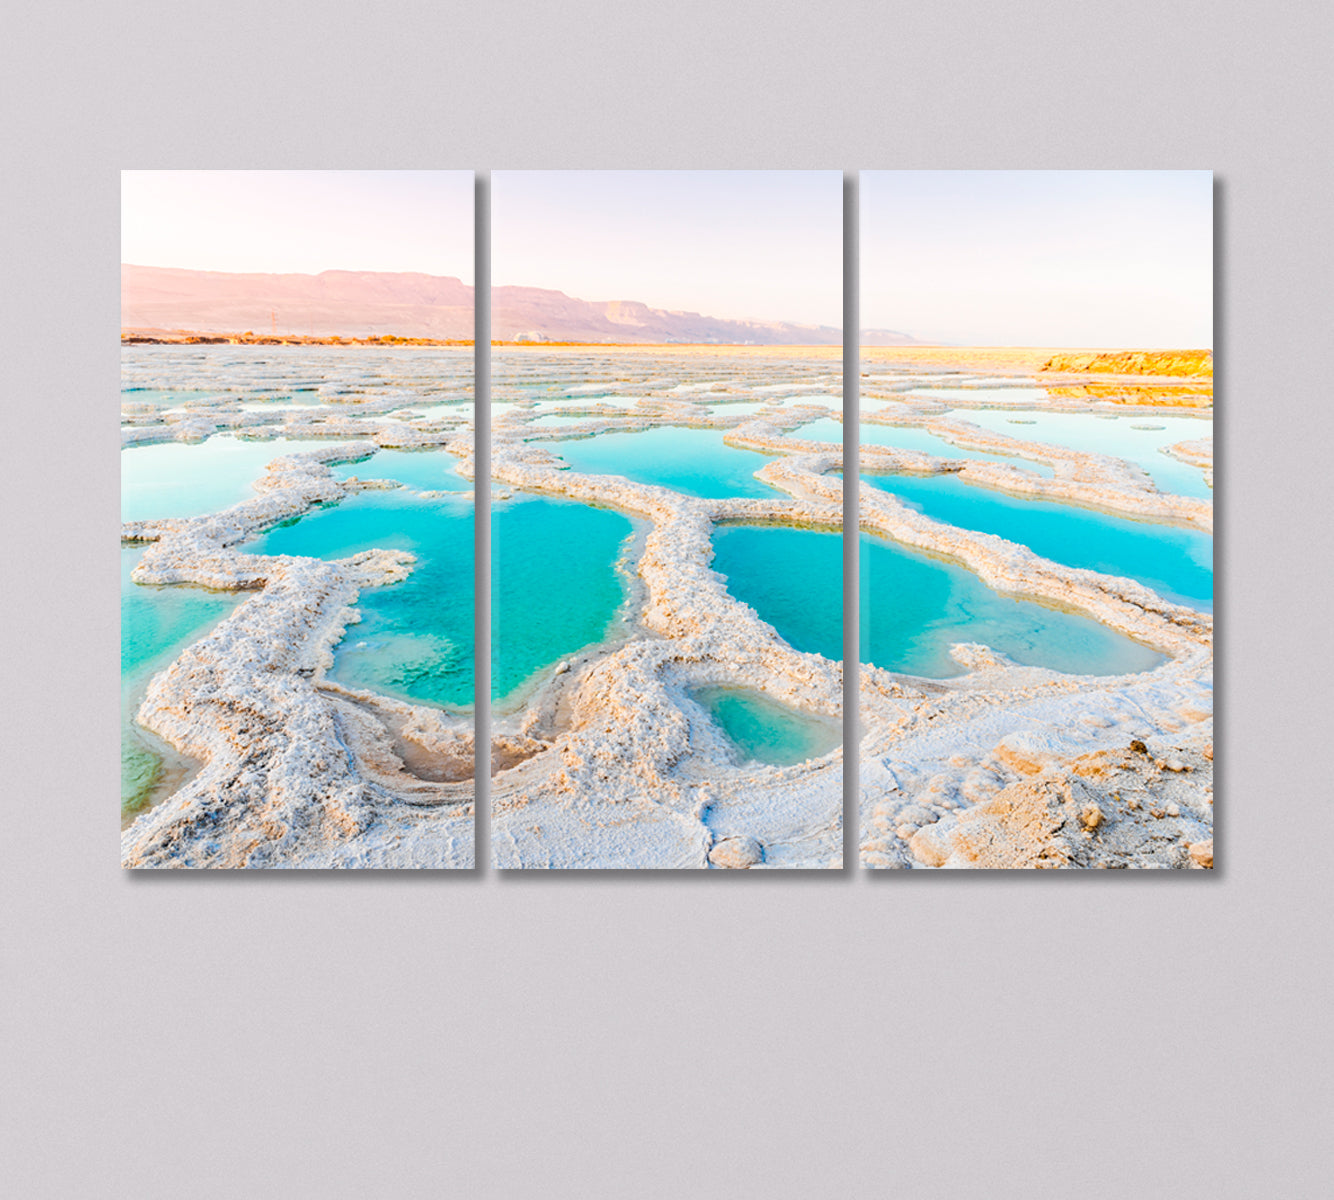 Dead Sea Coast Canvas Print-Canvas Print-CetArt-3 Panels-36x24 inches-CetArt